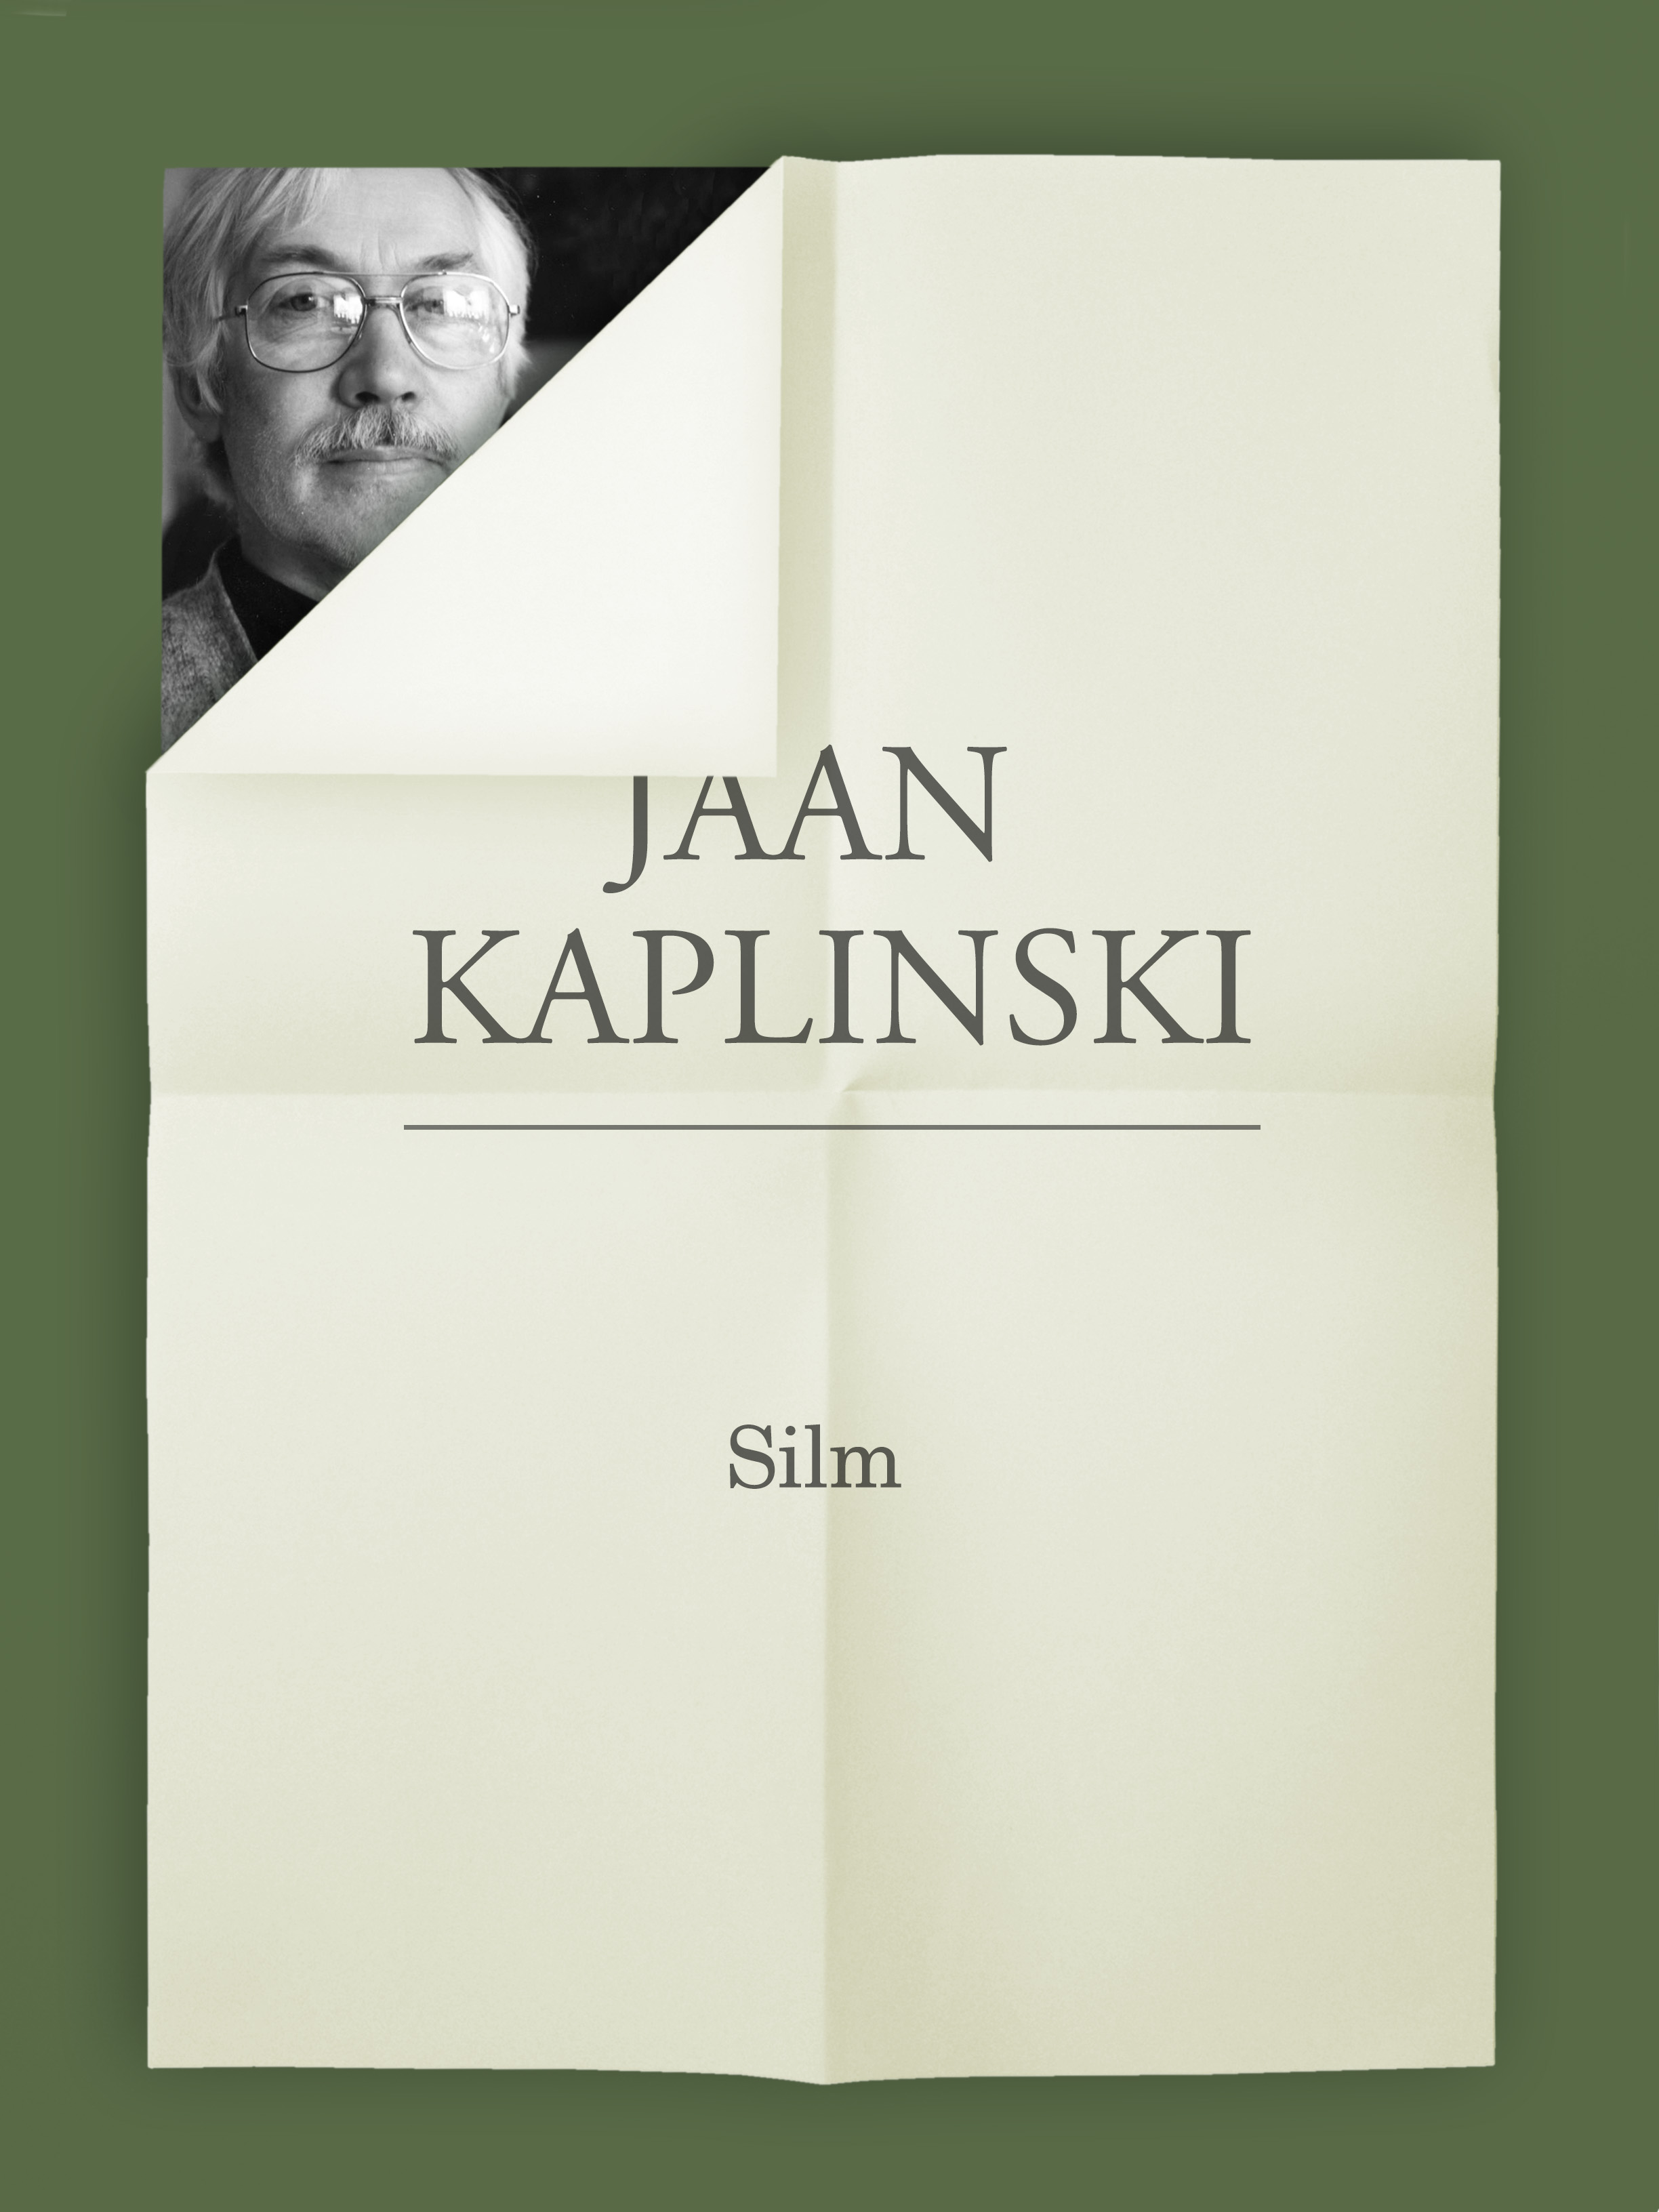 Книга Silm из серии , созданная Jaan Kaplinski, может относится к жанру Зарубежная классика, Литература 20 века. Стоимость электронной книги Silm с идентификатором 21184788 составляет 243.94 руб.